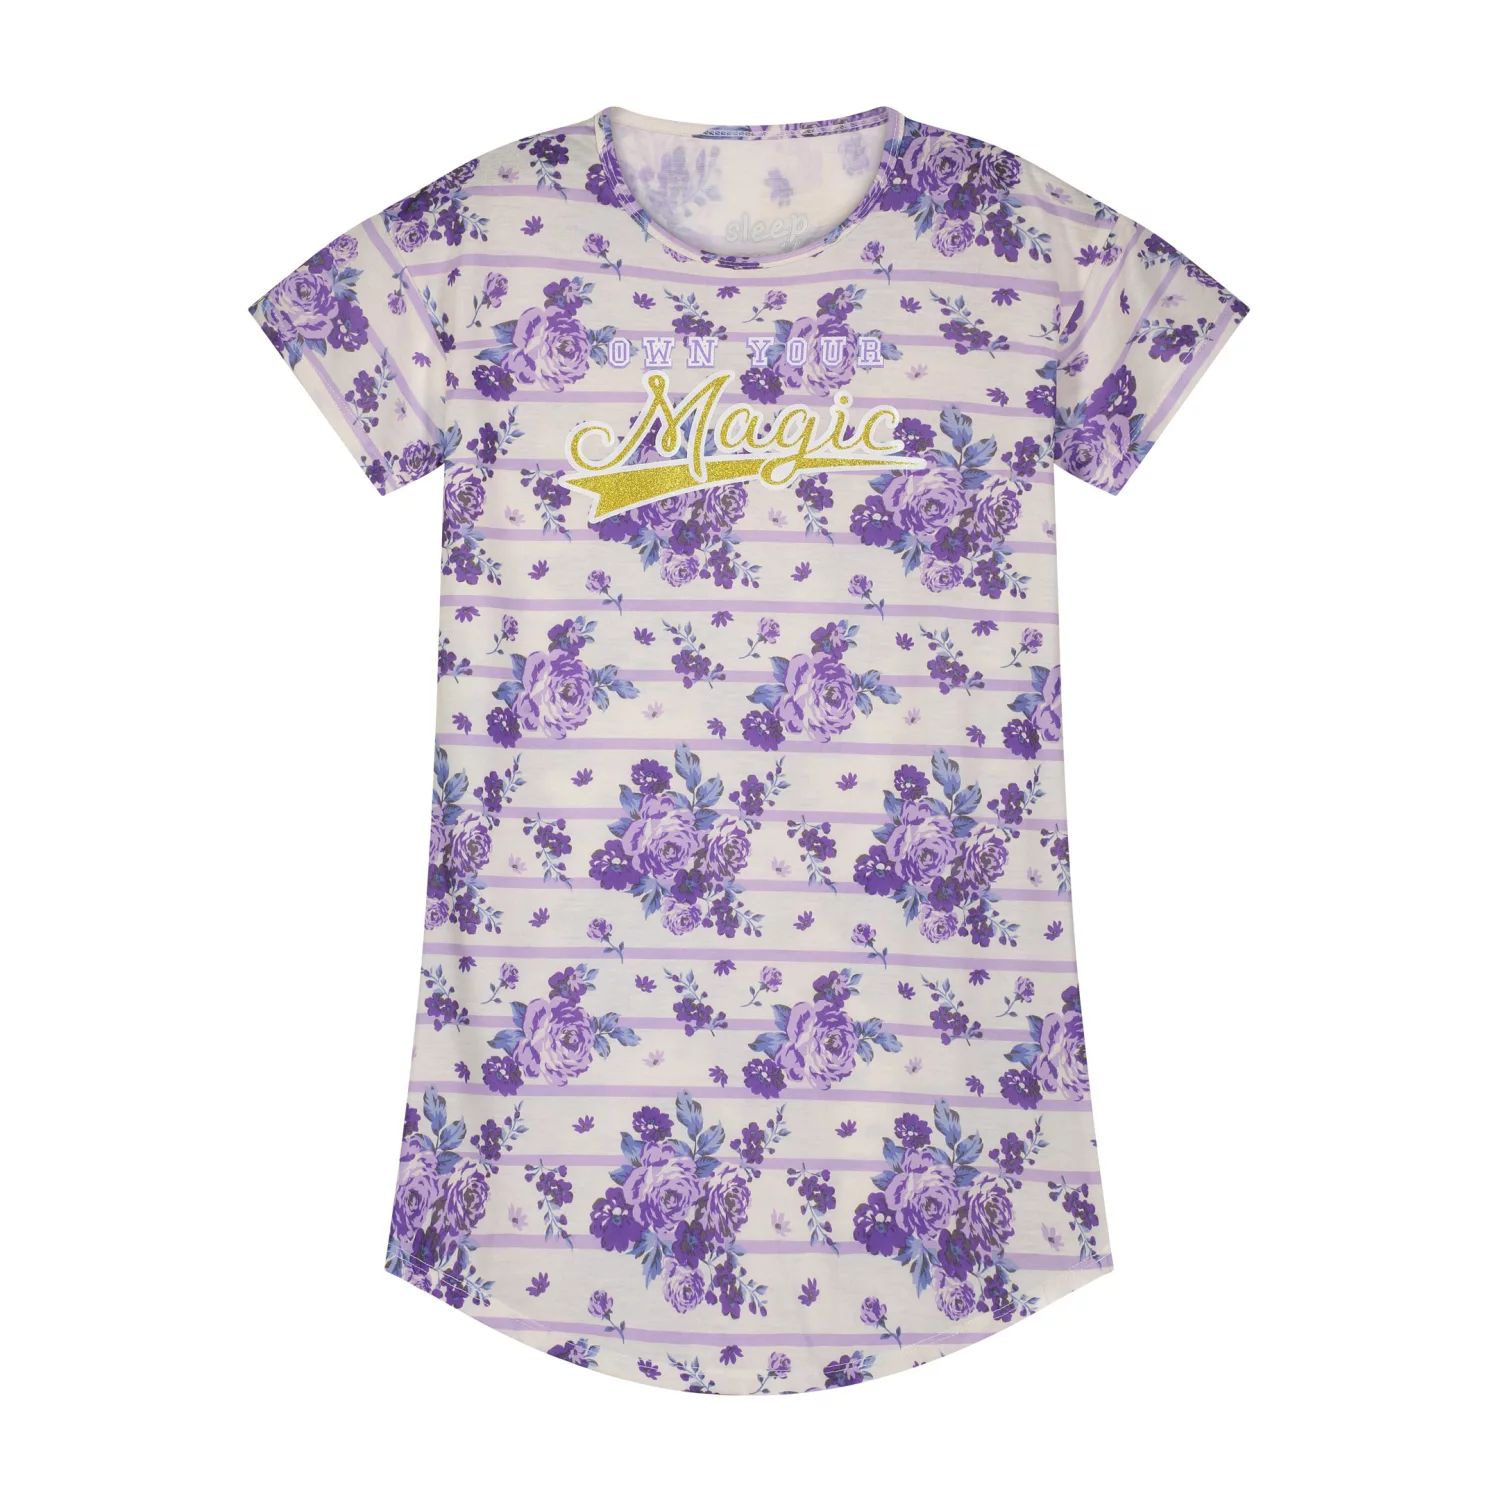 Пижамная рубашка Sleep On It для девочек с волшебным цветочным принтом и соответствующей маской для сна Sleep on it